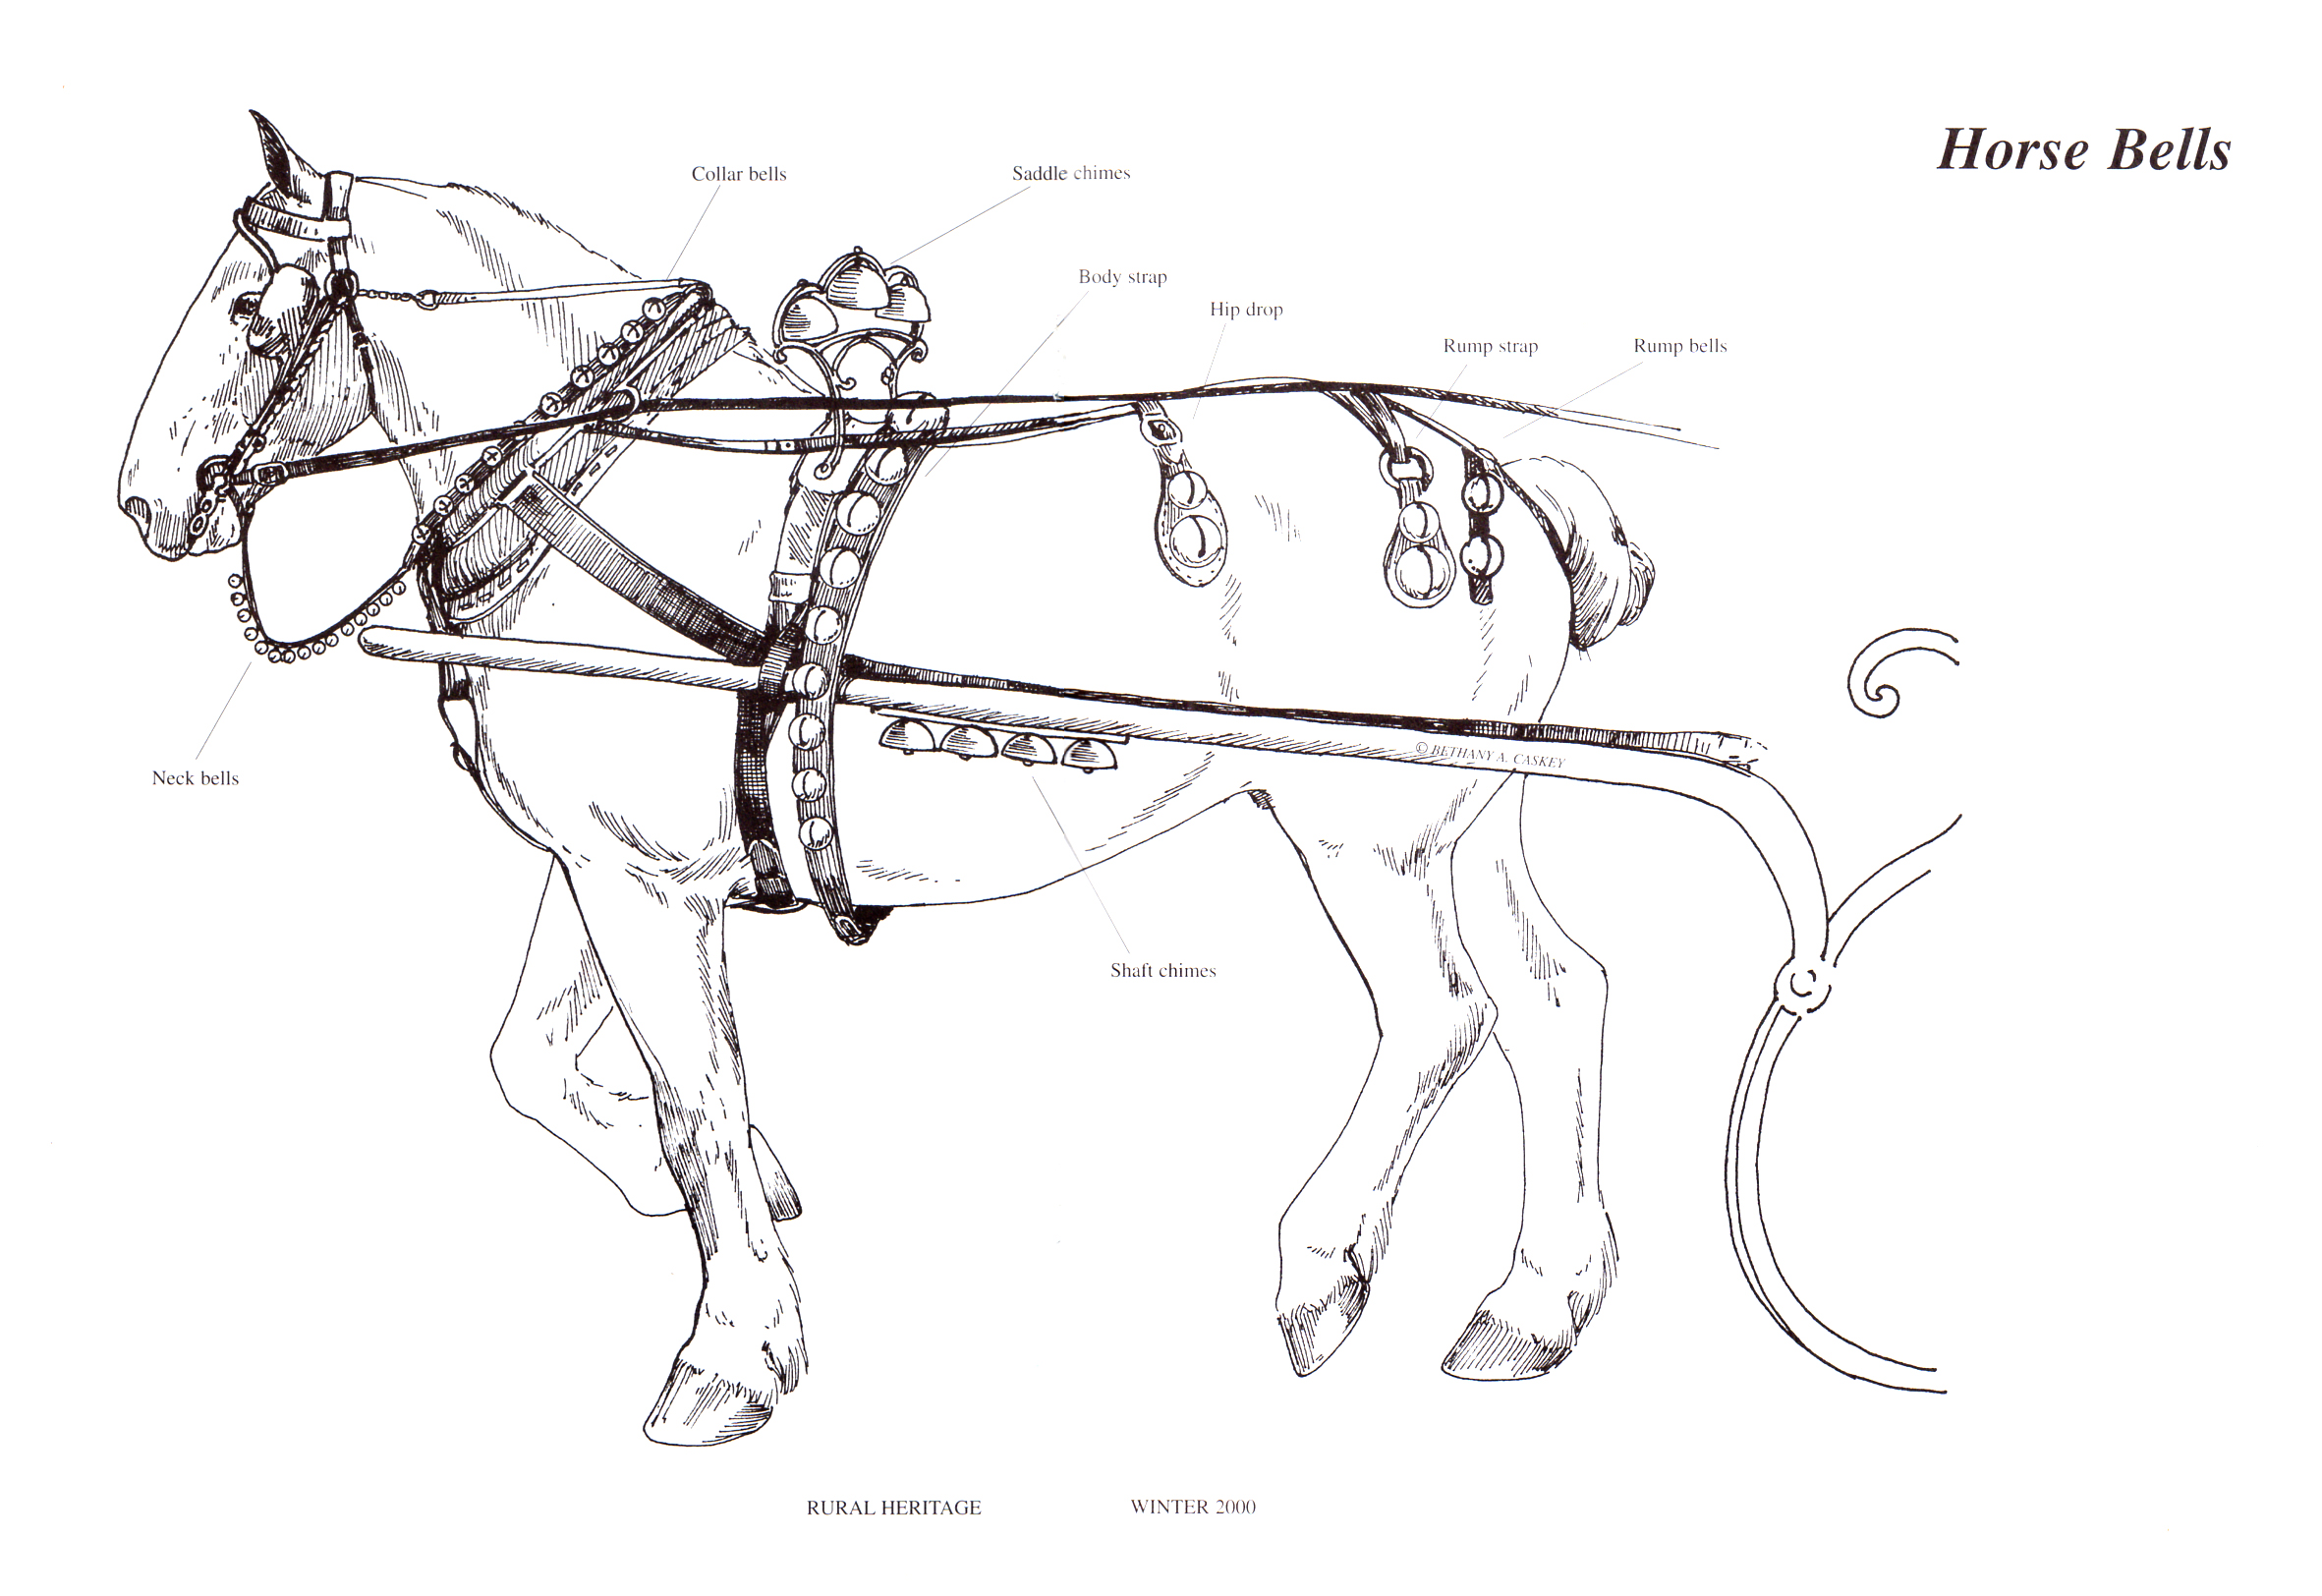 horse bells illustrations